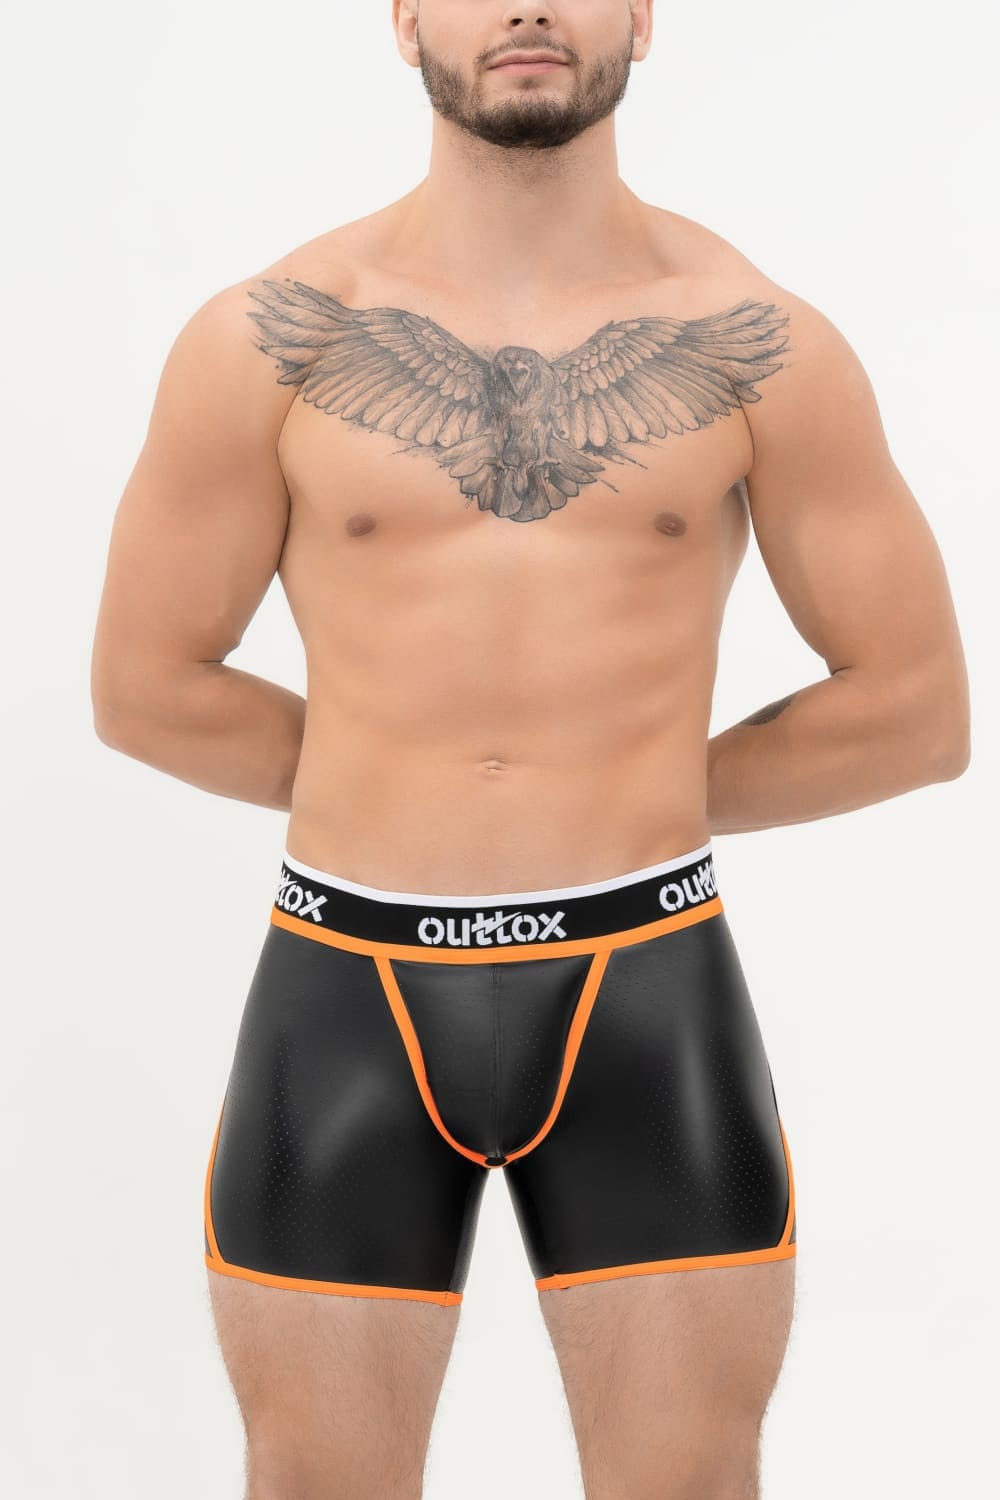 Outtox. Kurze Strumpfhose mit Wickel-Rücken. Codpiece mit Druckknopf. Schwarz+Orange